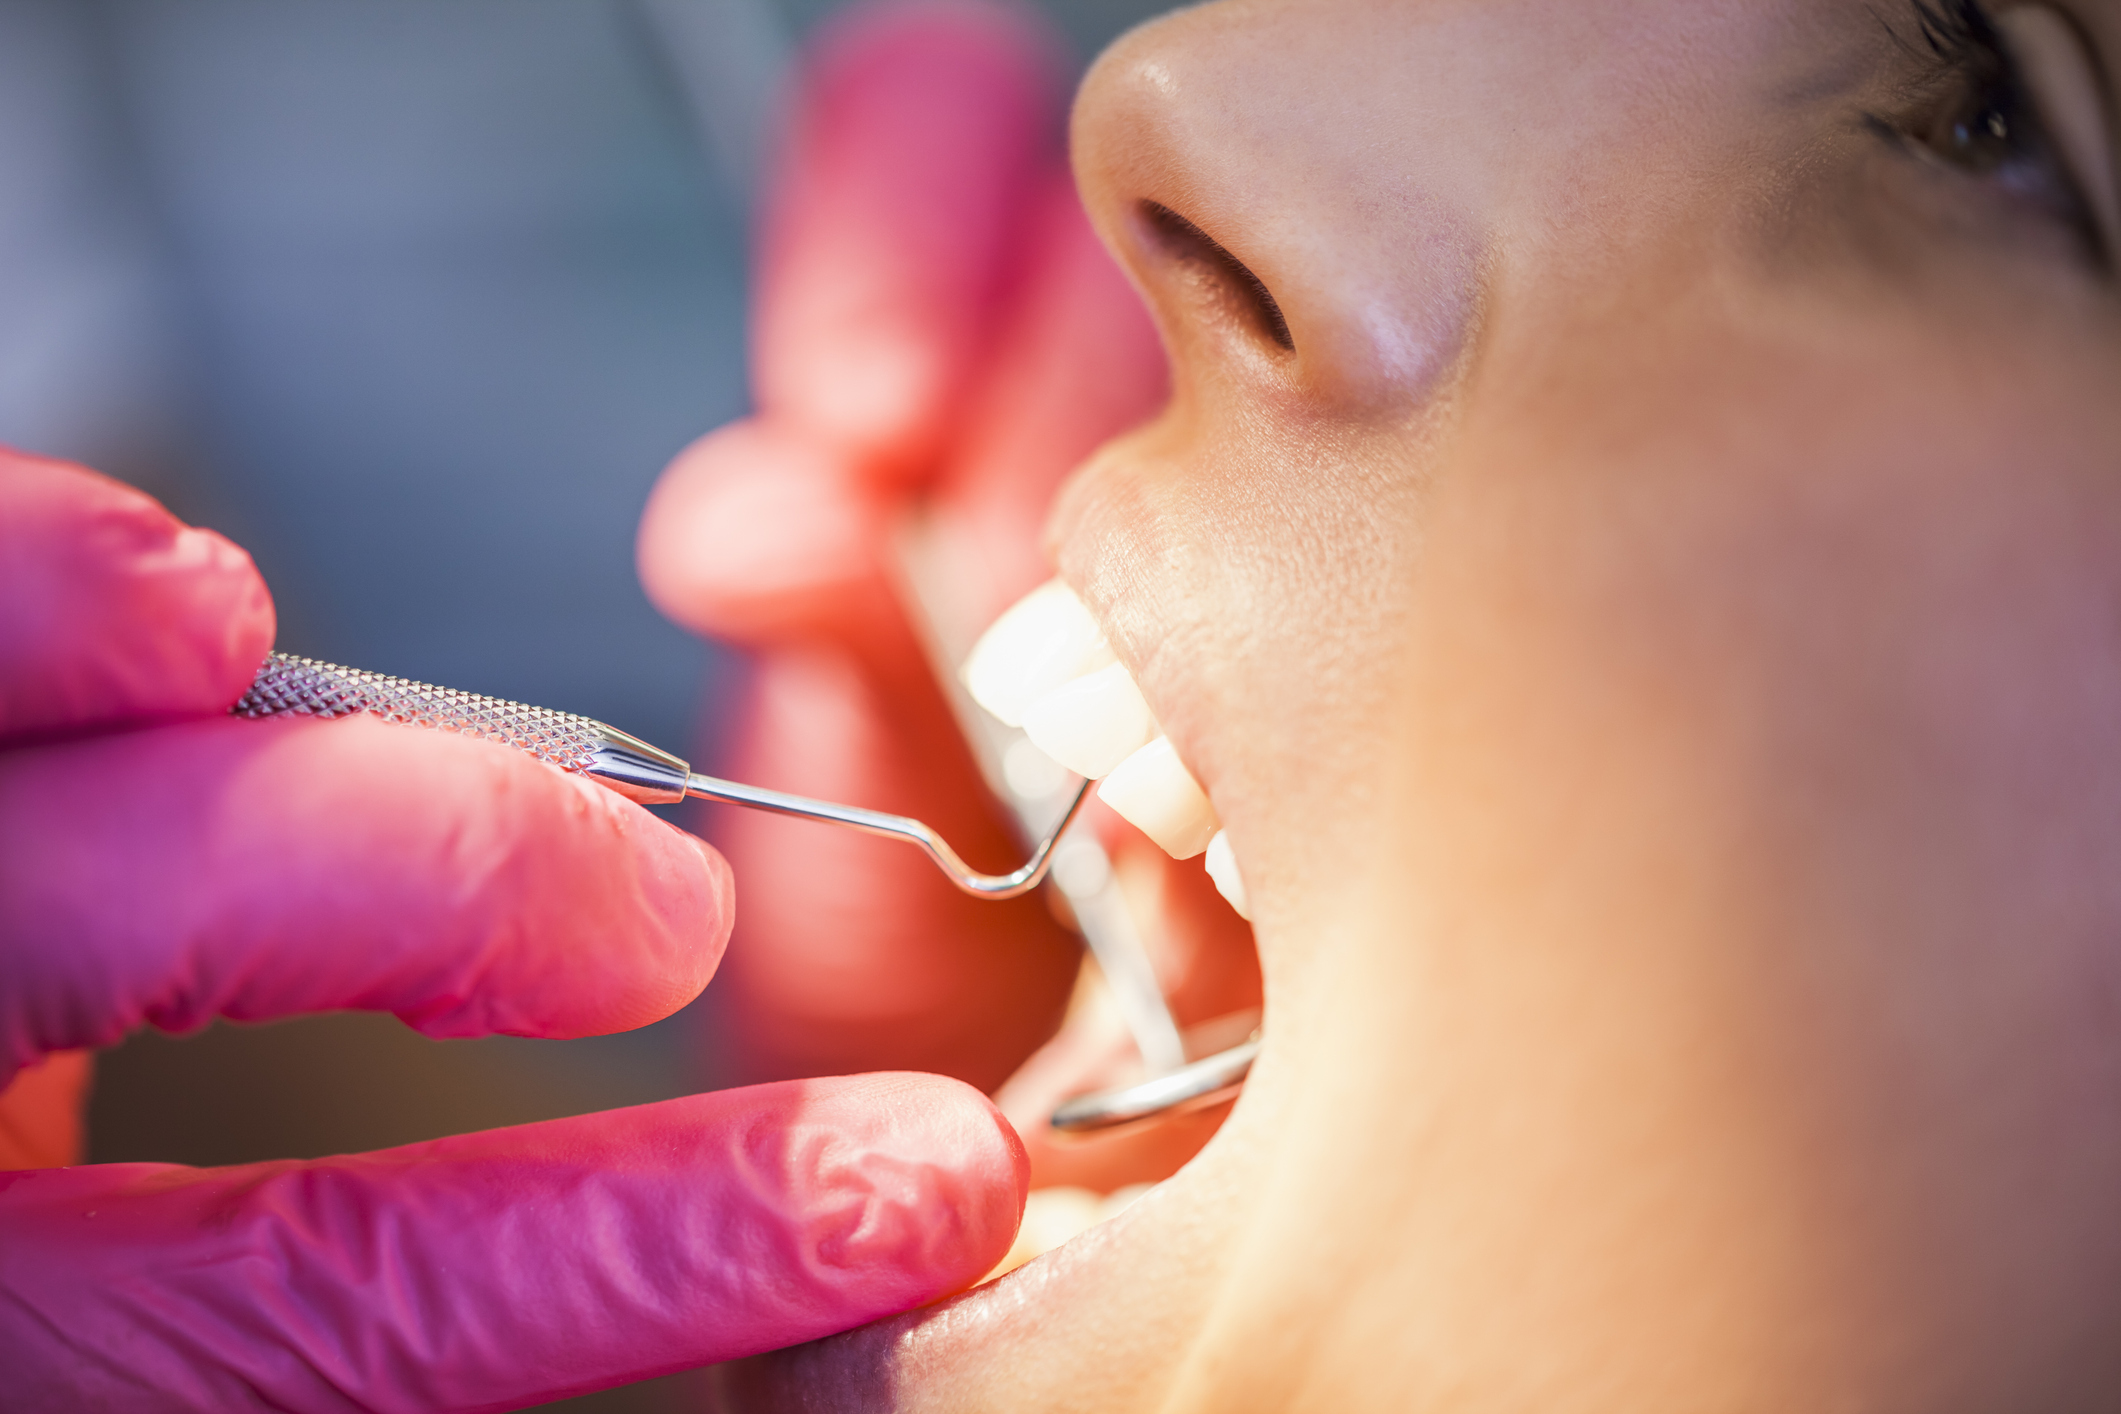 Восстановление эмали зубов: методы восстановления зубной эмали